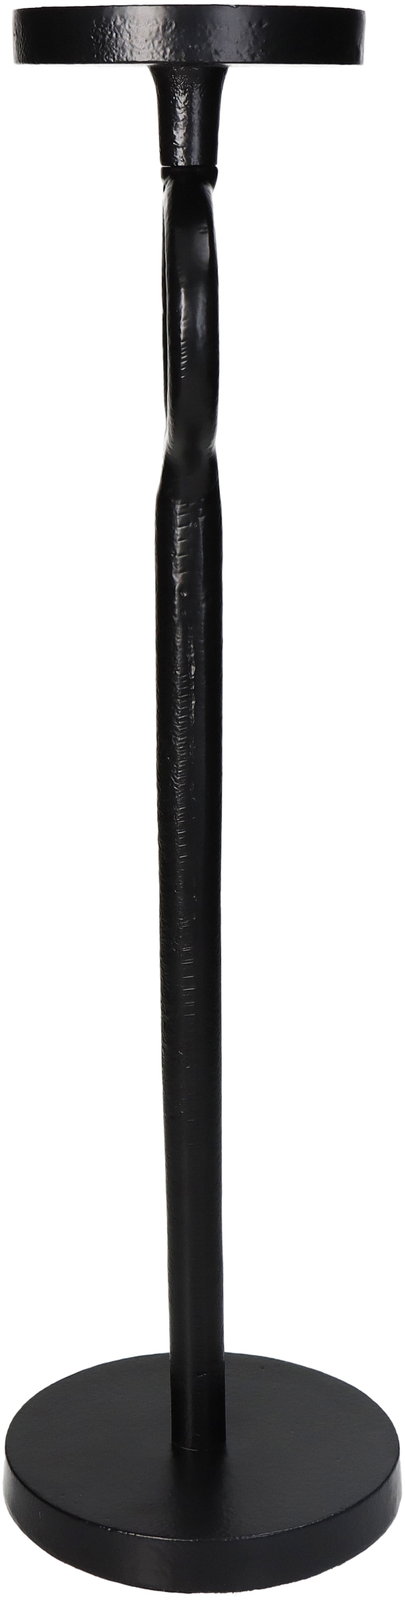 Candle Holder Aluminium Black 11.5x11.5x36.5cm